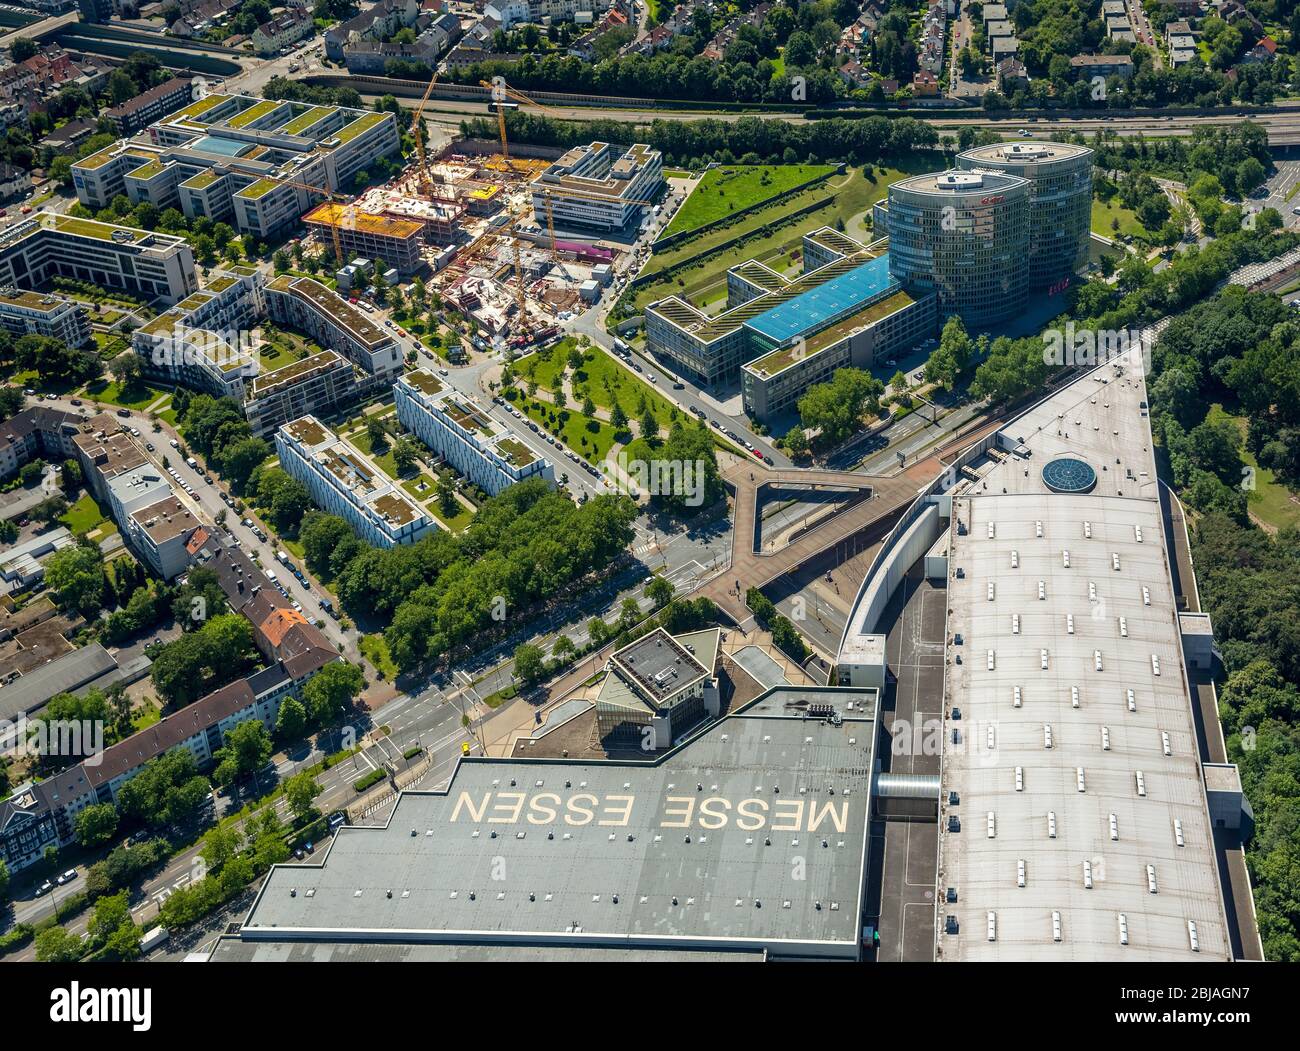 Recinto ferial Messe Essen, 23.06.2016, vista aérea, Alemania, Renania del Norte-Westfalia, área de Ruhr, Essen Foto de stock